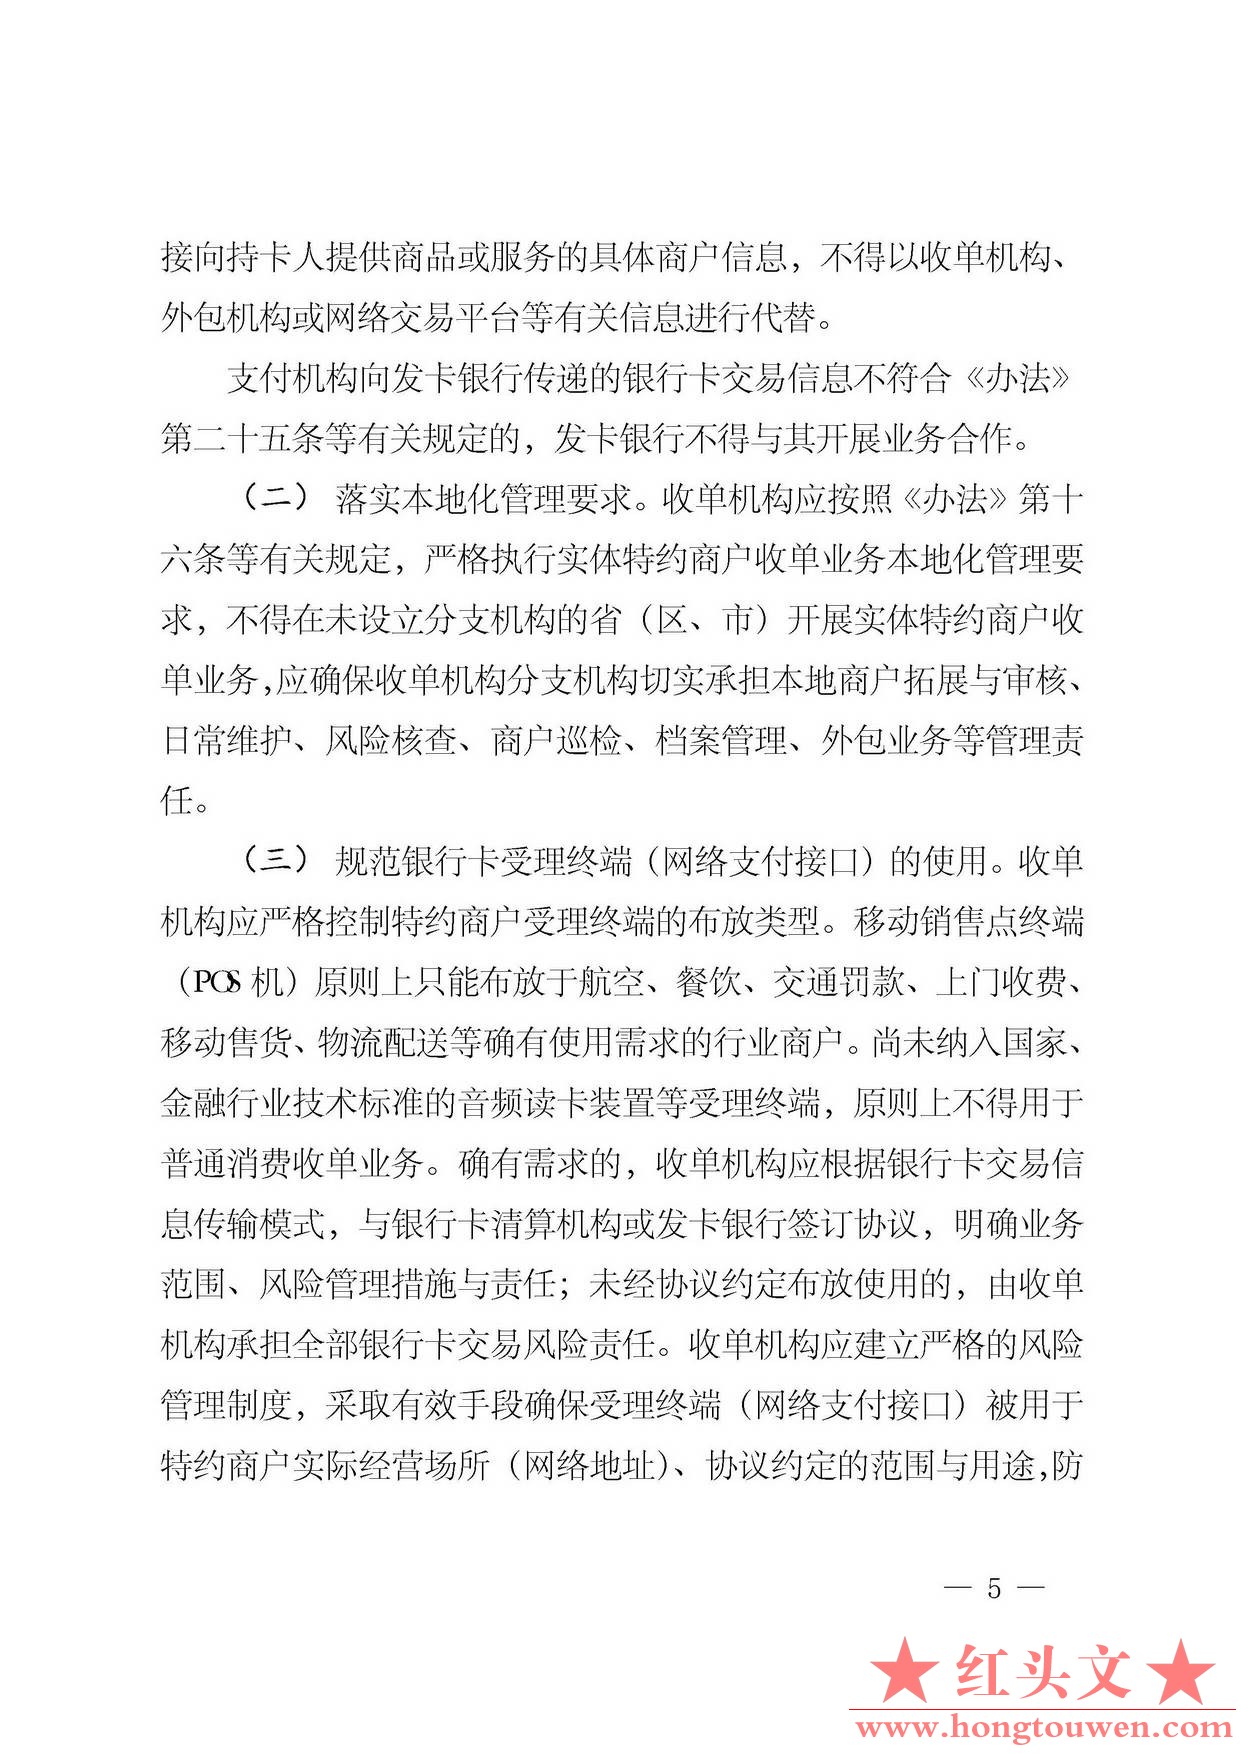 银发[2014]5号-中国人民银行关于加强银行卡业务管理的通知_页面_5.jpg